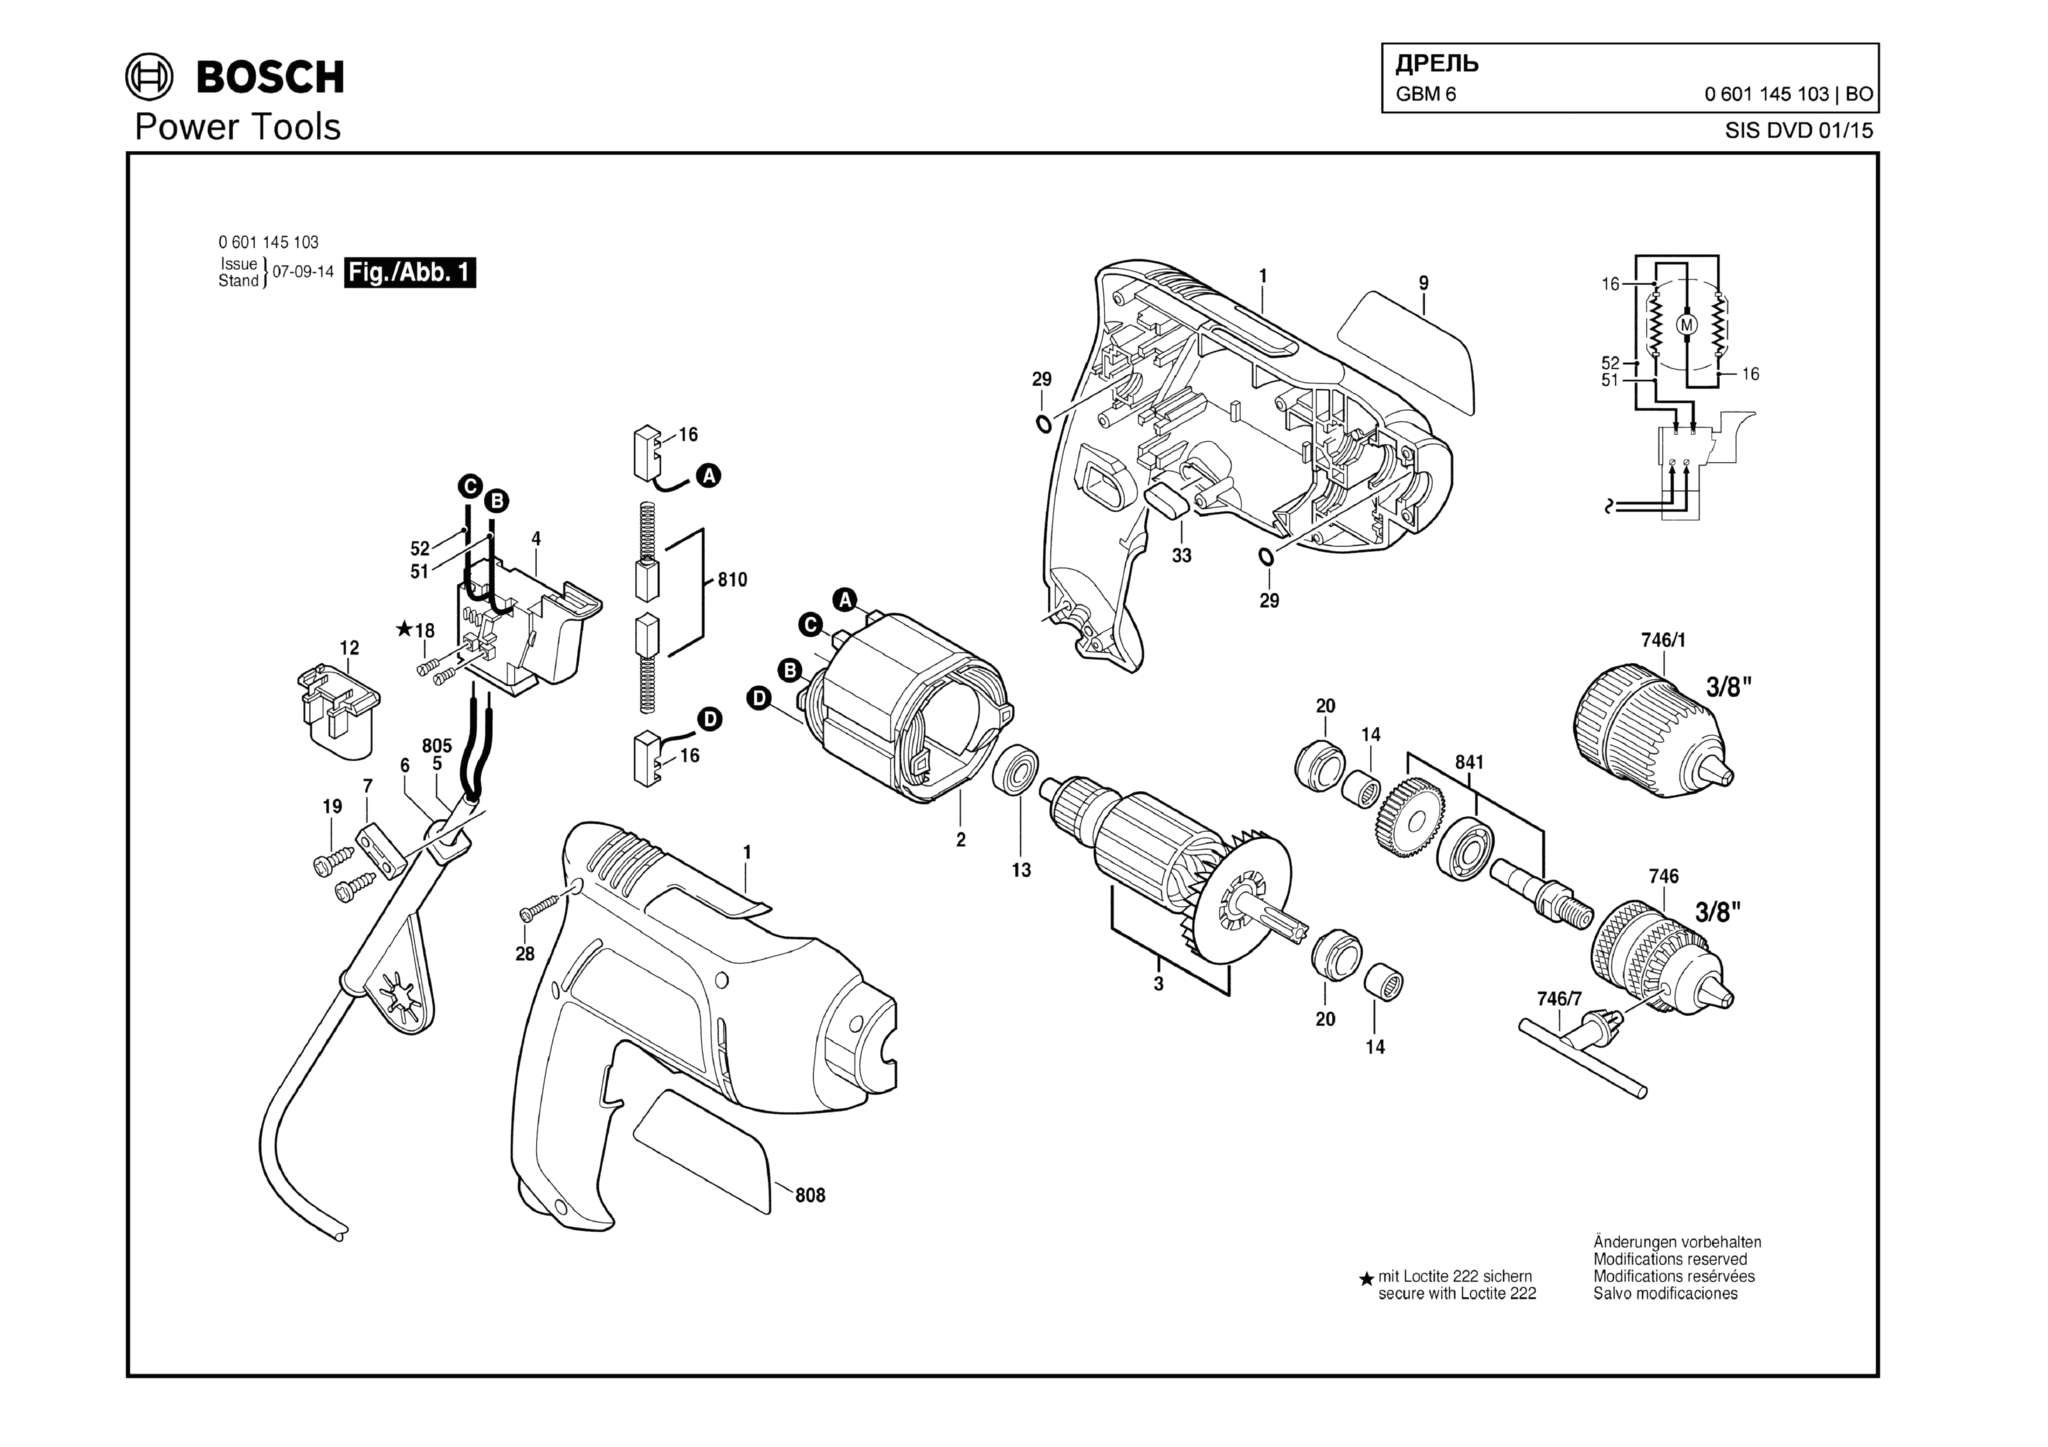 Запчасти, схема и деталировка Bosch GBM 6 (ТИП 0601145103)